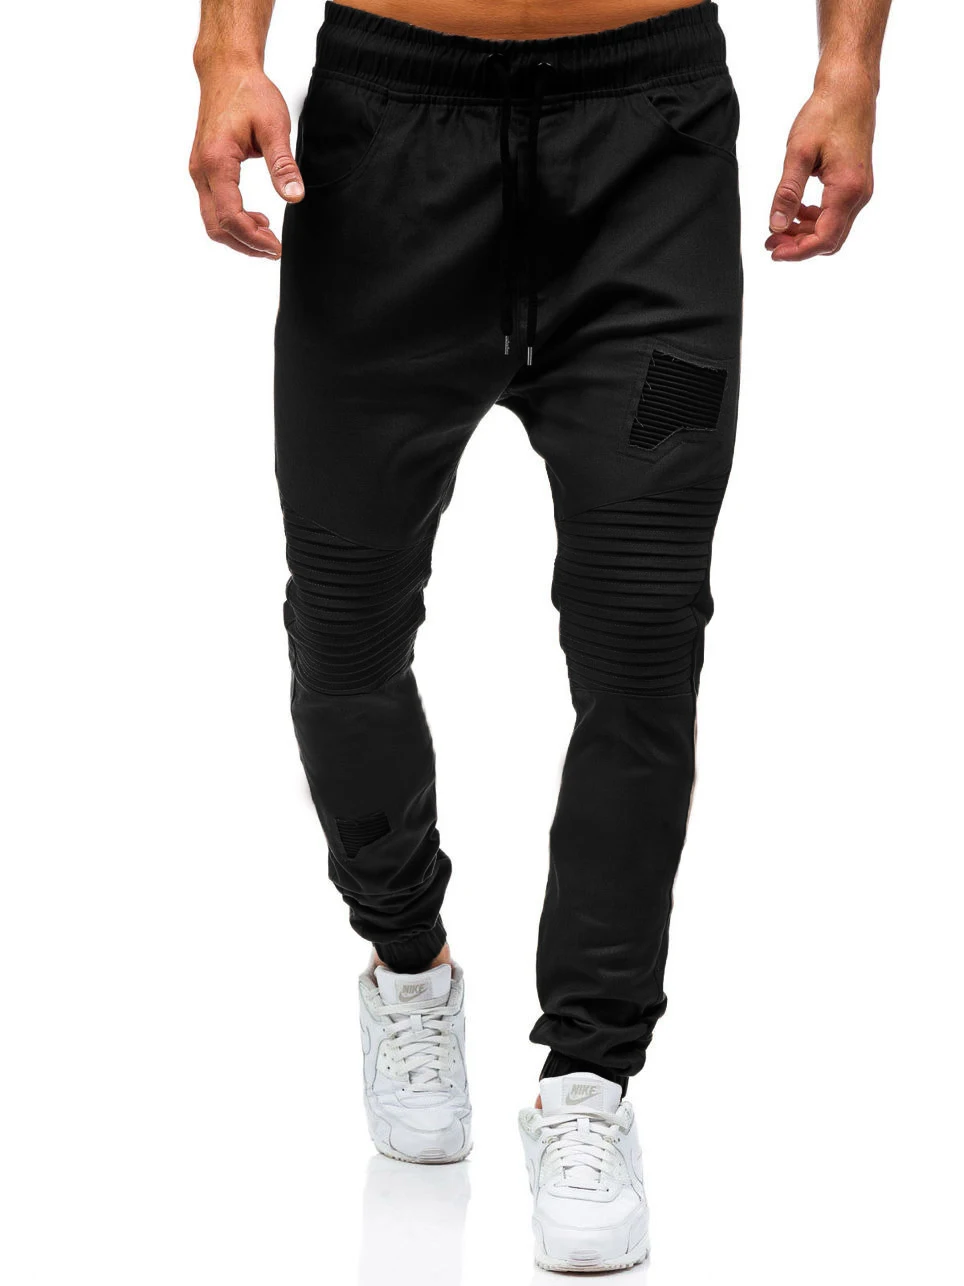 Г. мужские новые модные мужские брюки Чинос повседневные беговые Штаны хлопковые спортивные штаны со свободными группа манжеты - Цвет: Черный